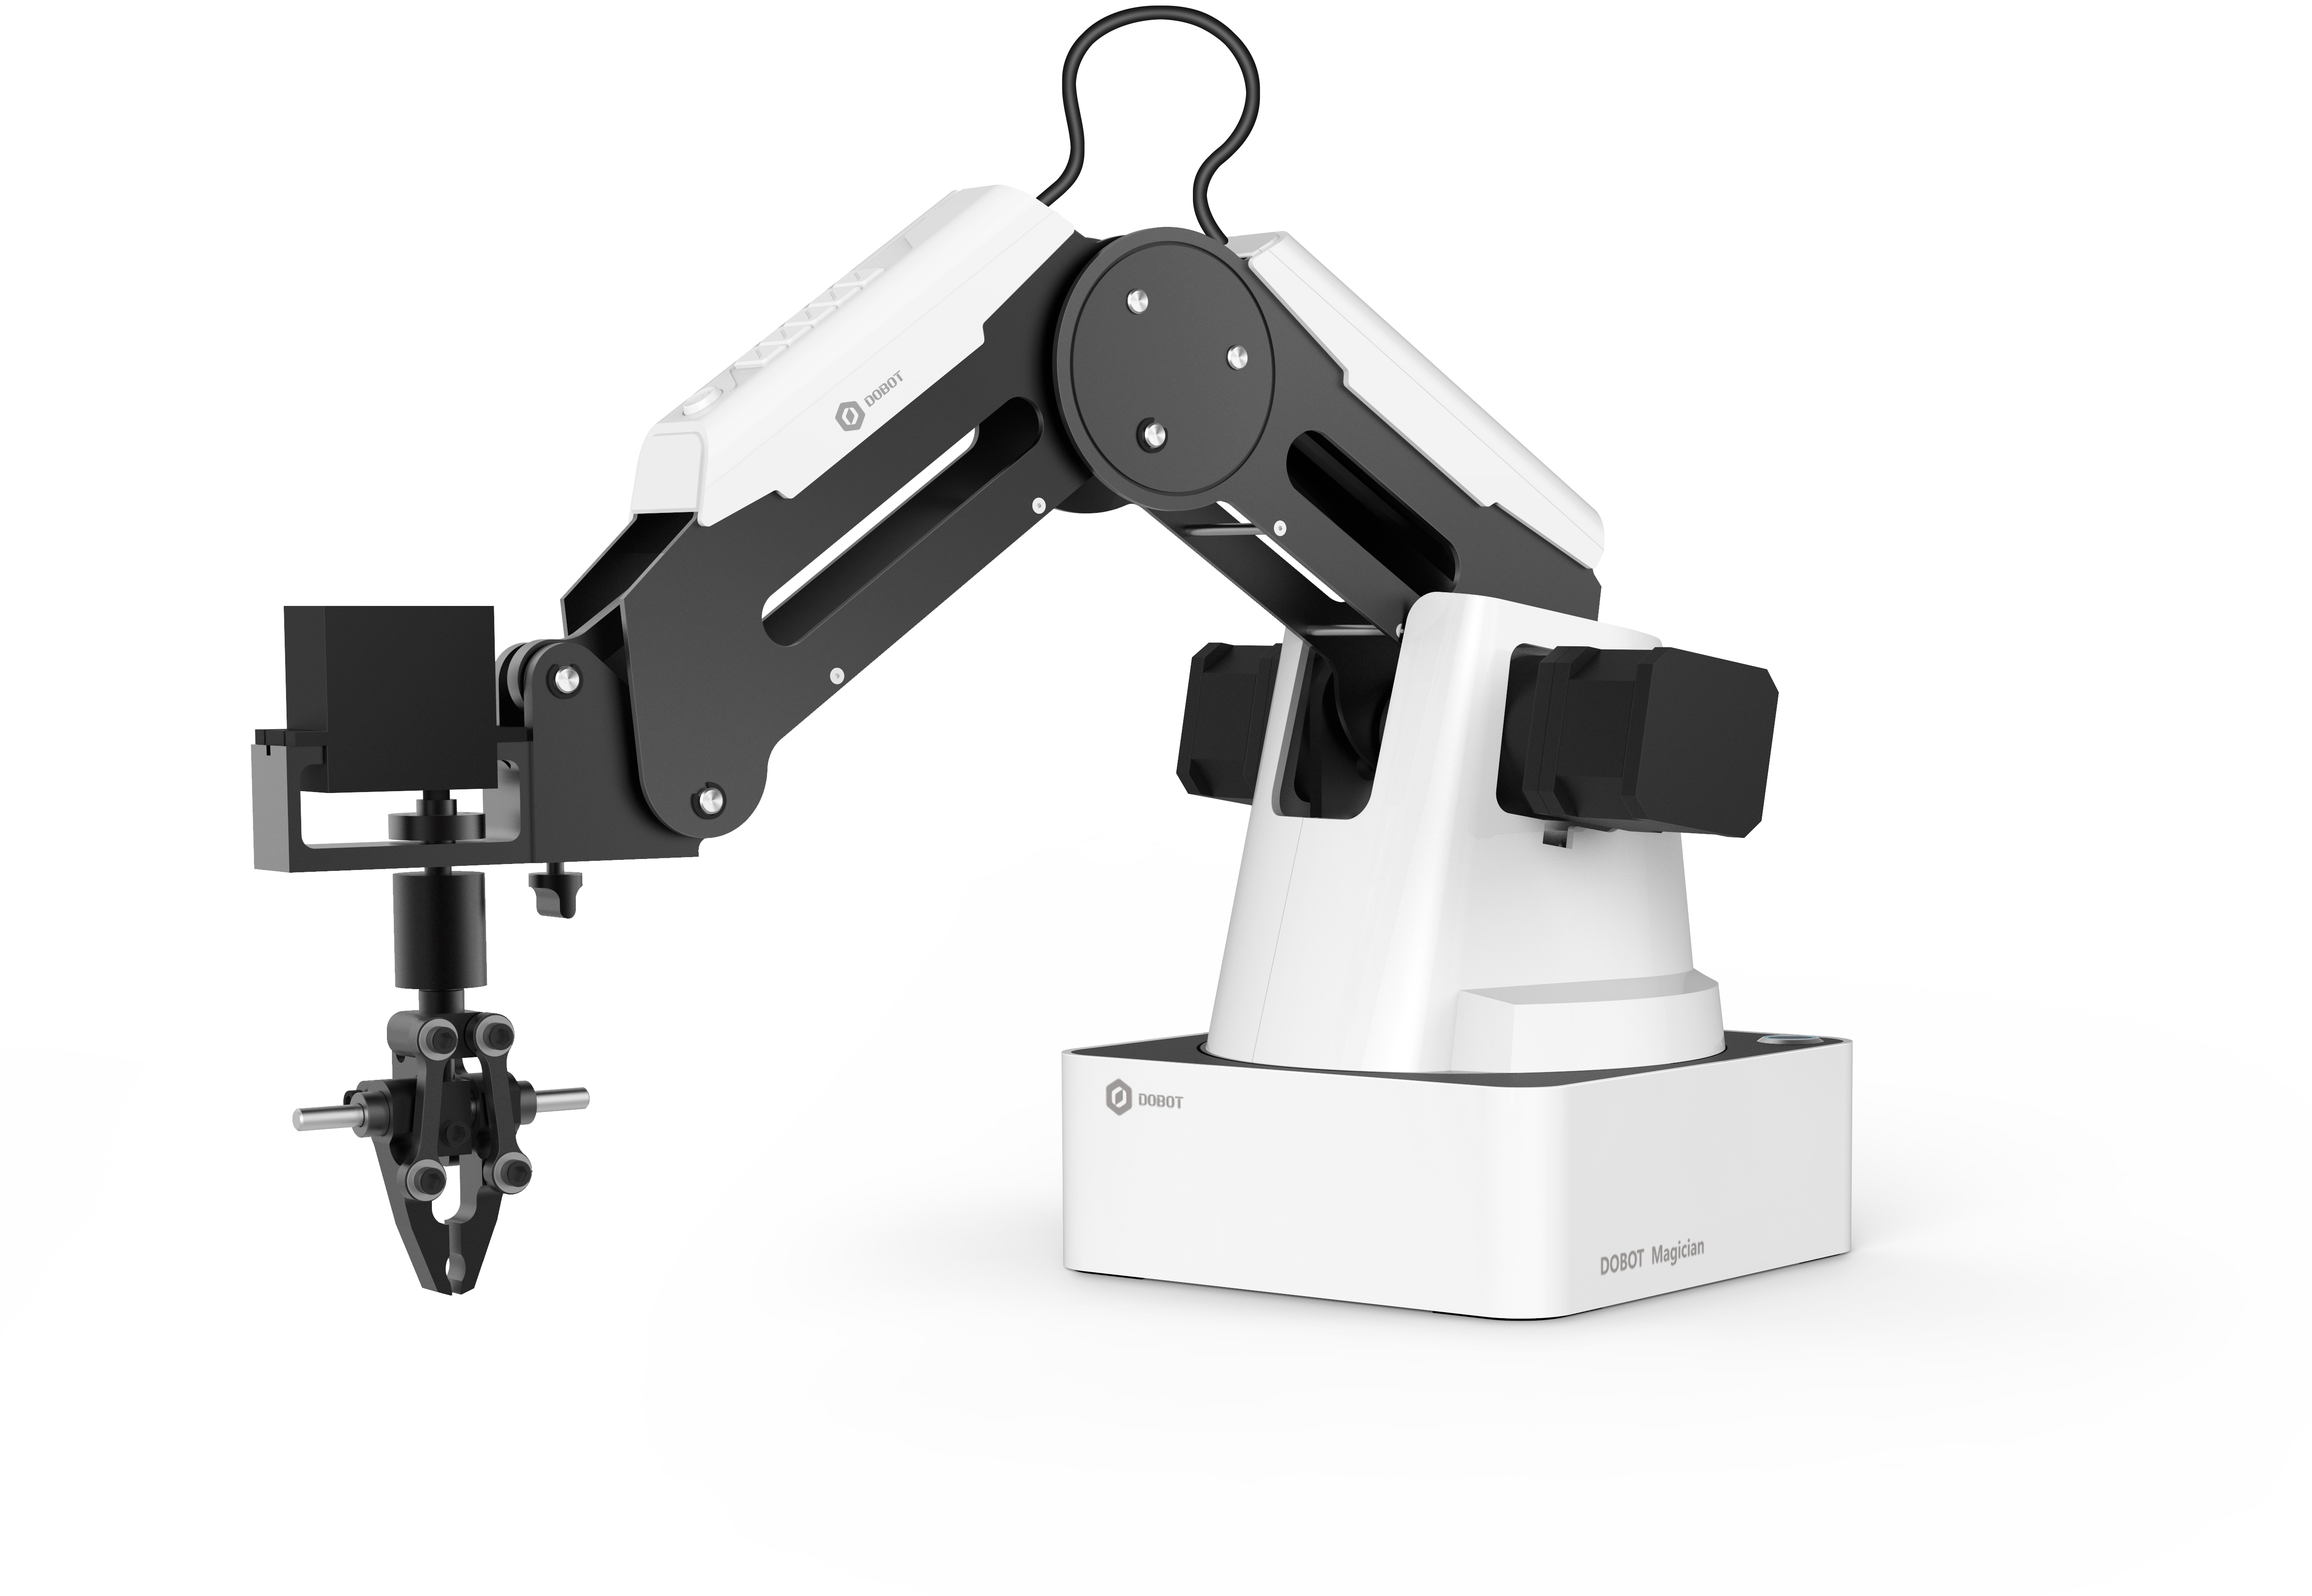 RobotLAB Dobot Robotic Arm-1.png